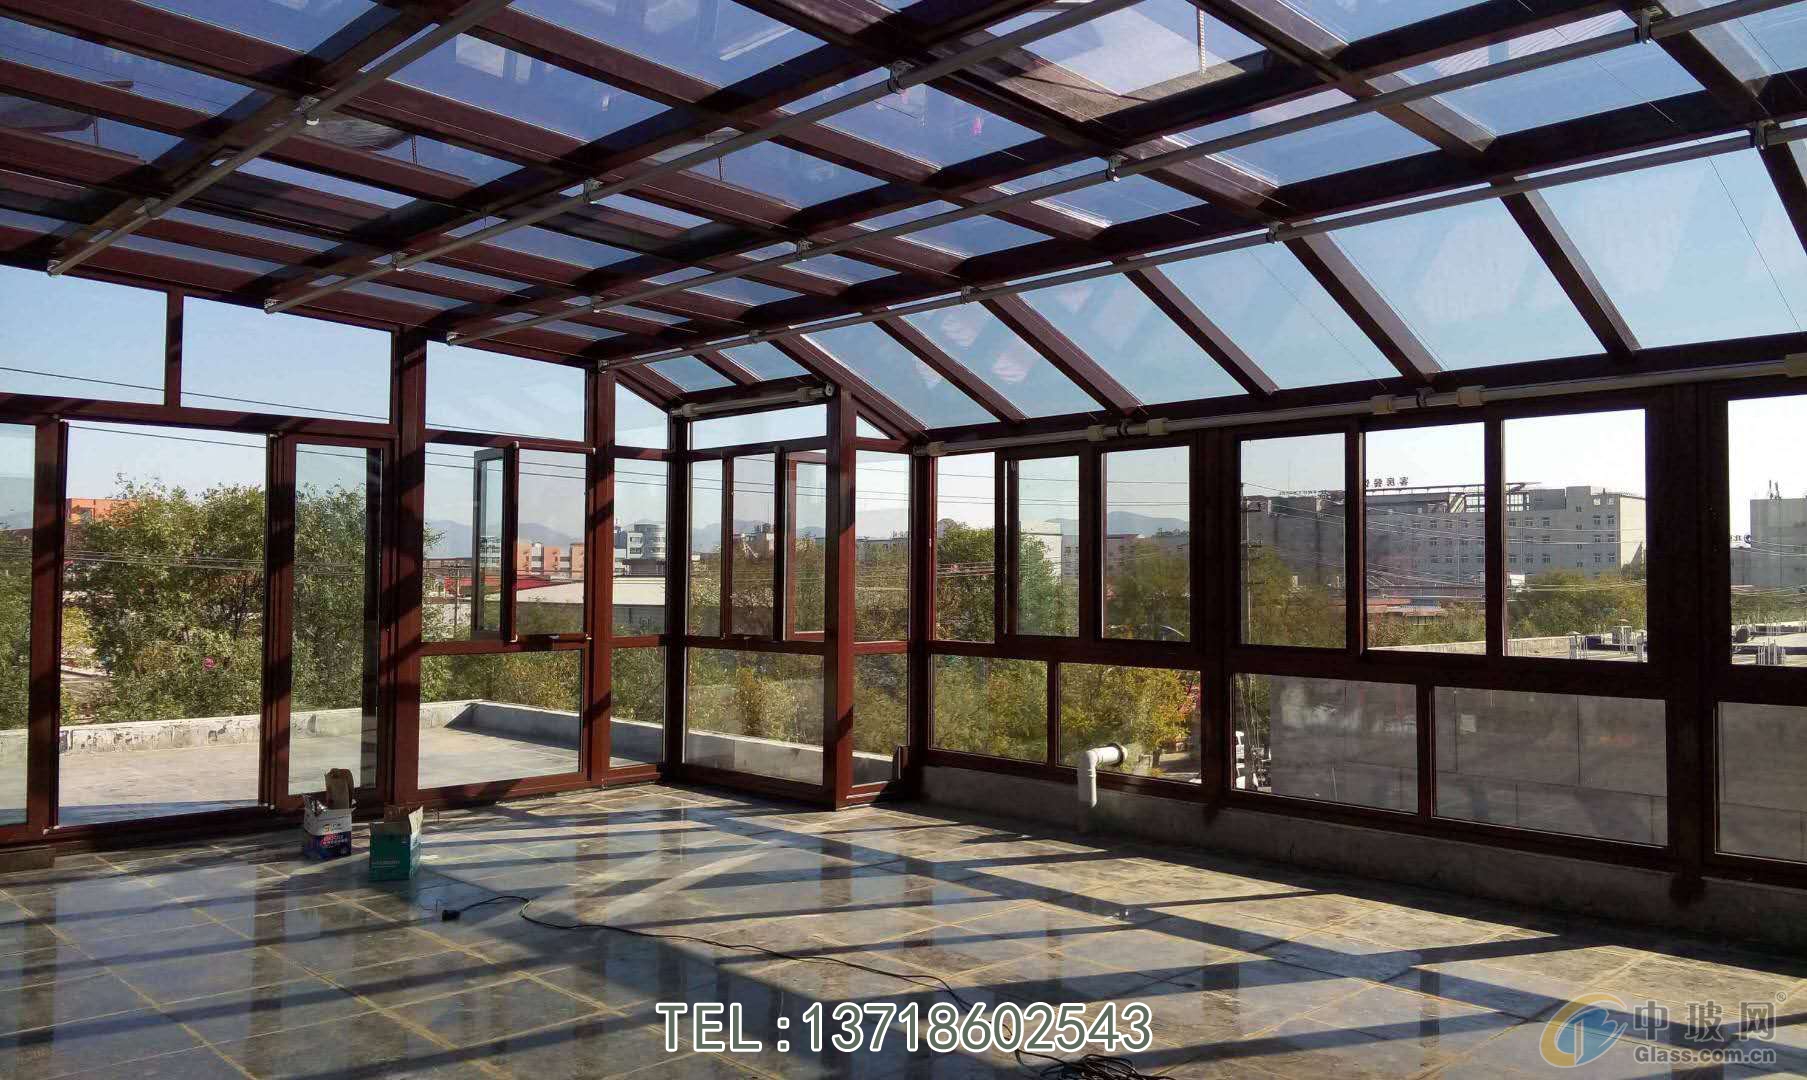 建筑玻璃 > 北京钢结构阳光房施工封院子玻璃封顶  发布时间: 2020年